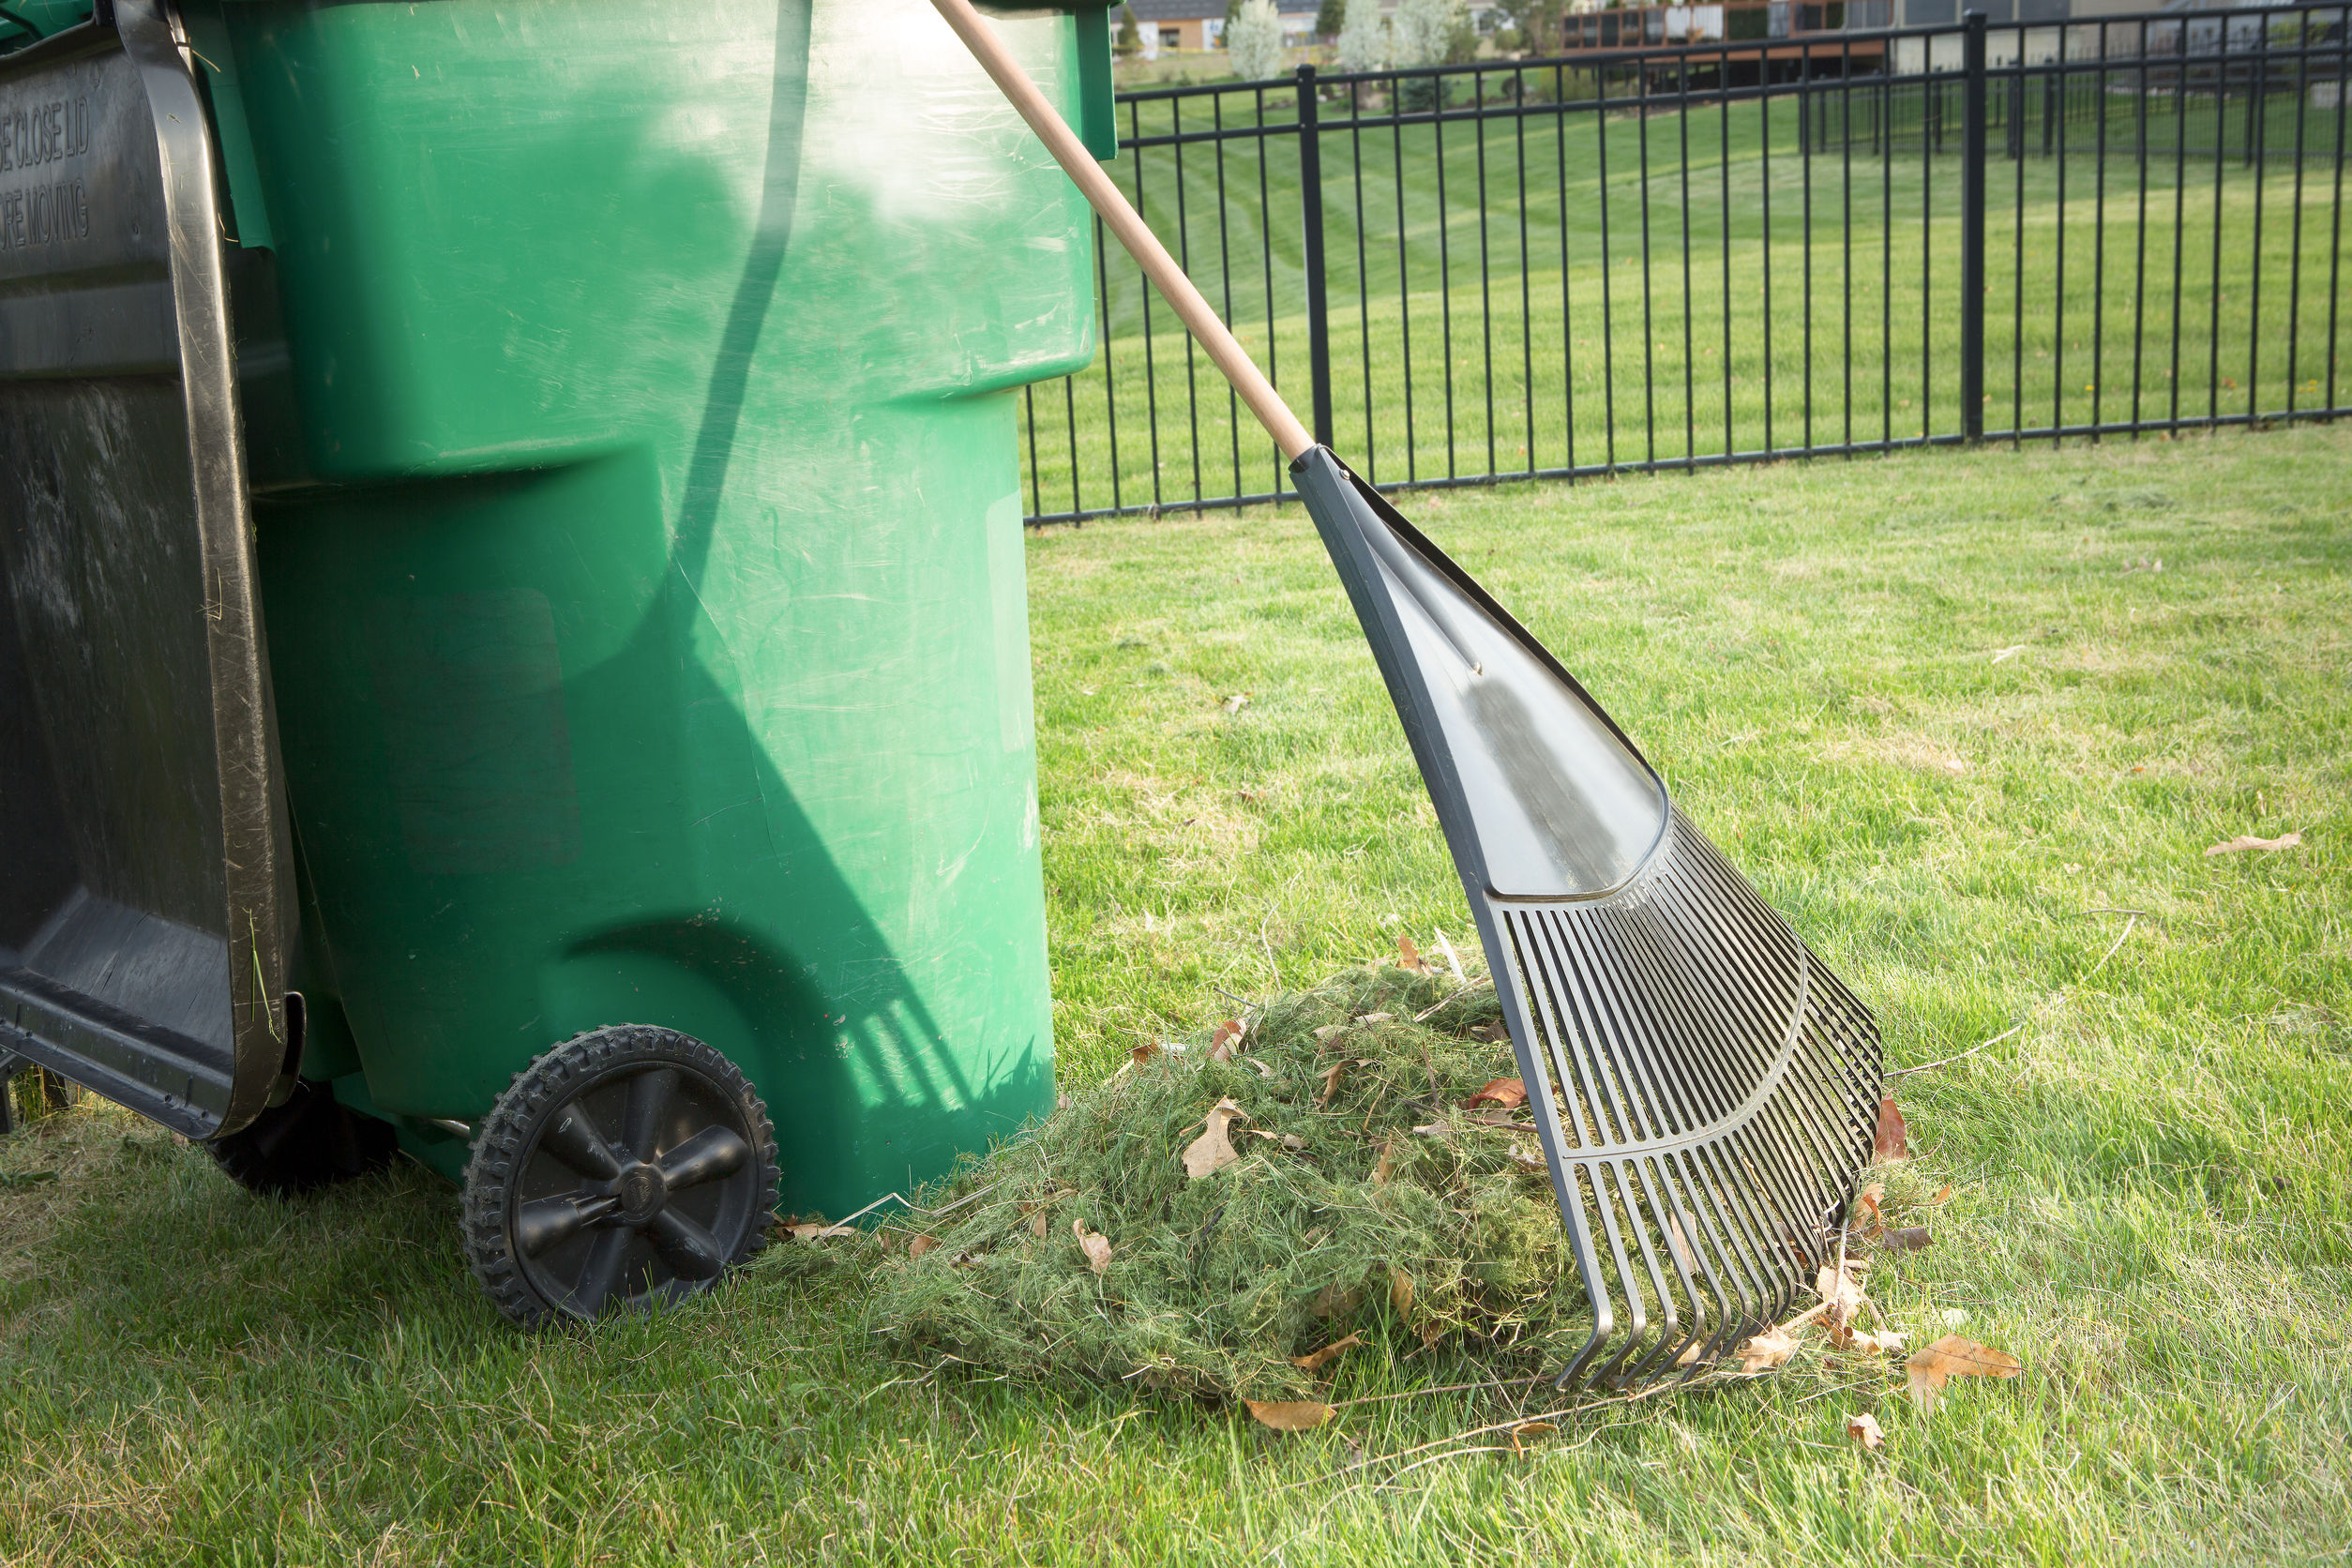 Yard cleaning. Мусорные баки для скошенной травы. Сгребают скошенную траву. Очистка газона от листьев. Yard debris removal.